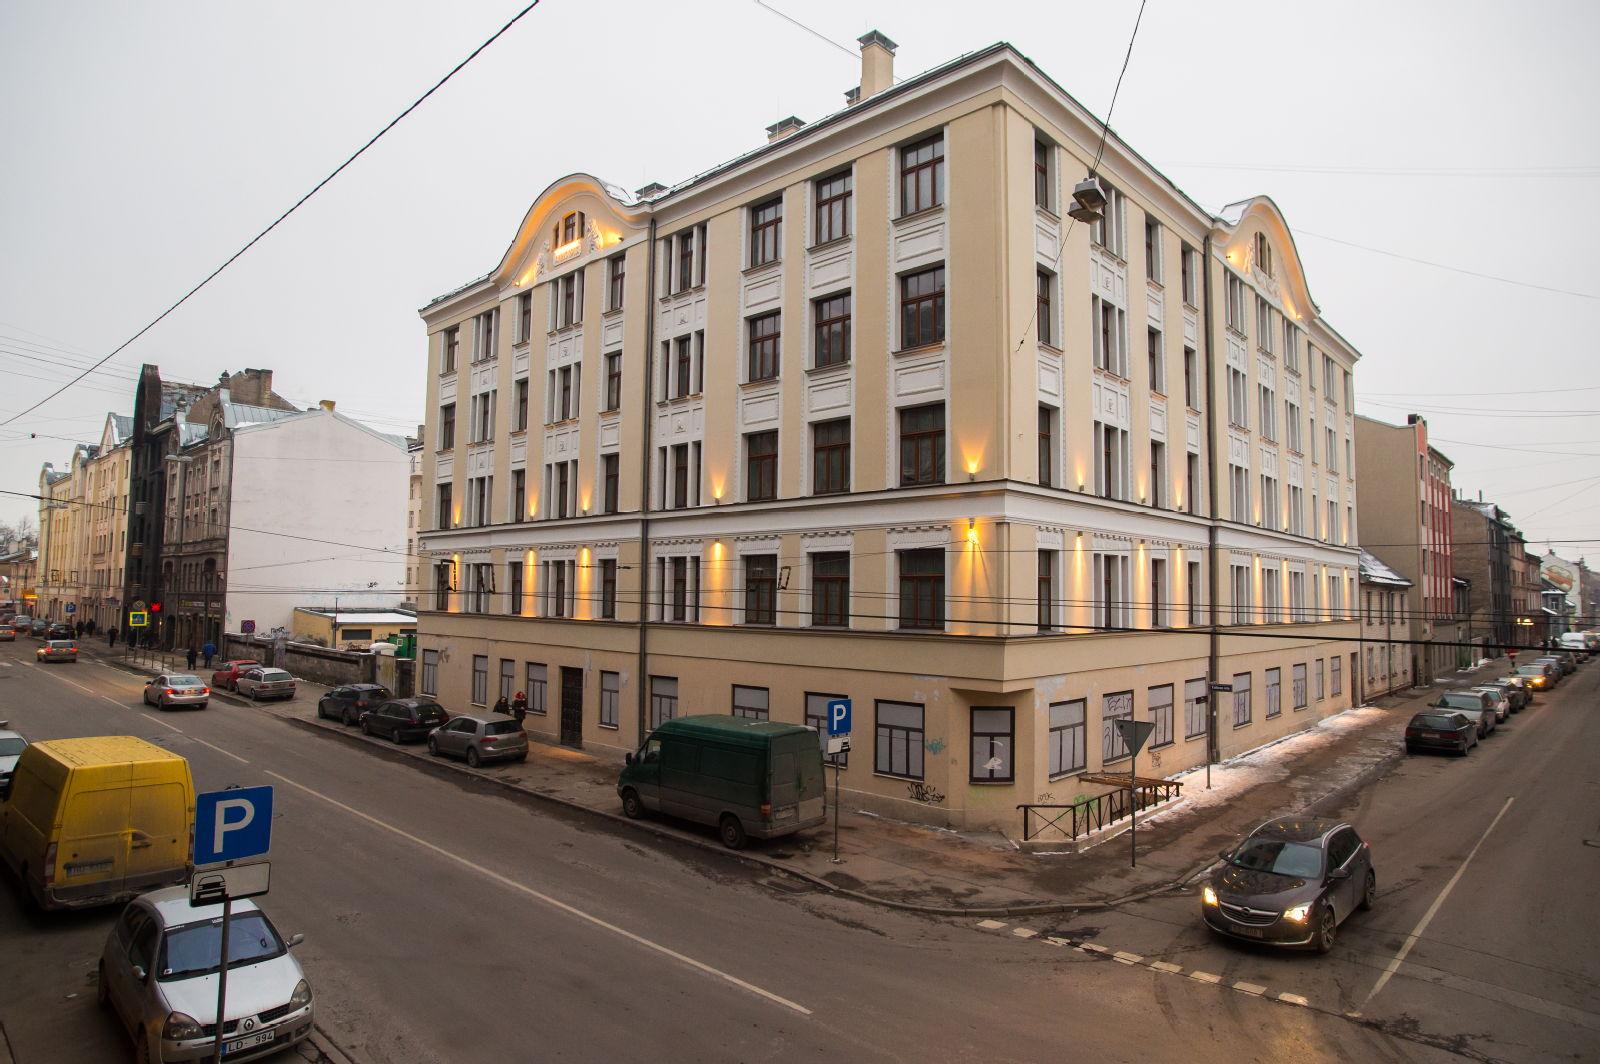 Iepazīsti karstākos jaunos projektus Rīgas centrā - mājokļus, kur viss soļa attālumā - Nekustamo īpašumu ziņas - City24.lv nekustamo īpašumu sludinājumu portāls